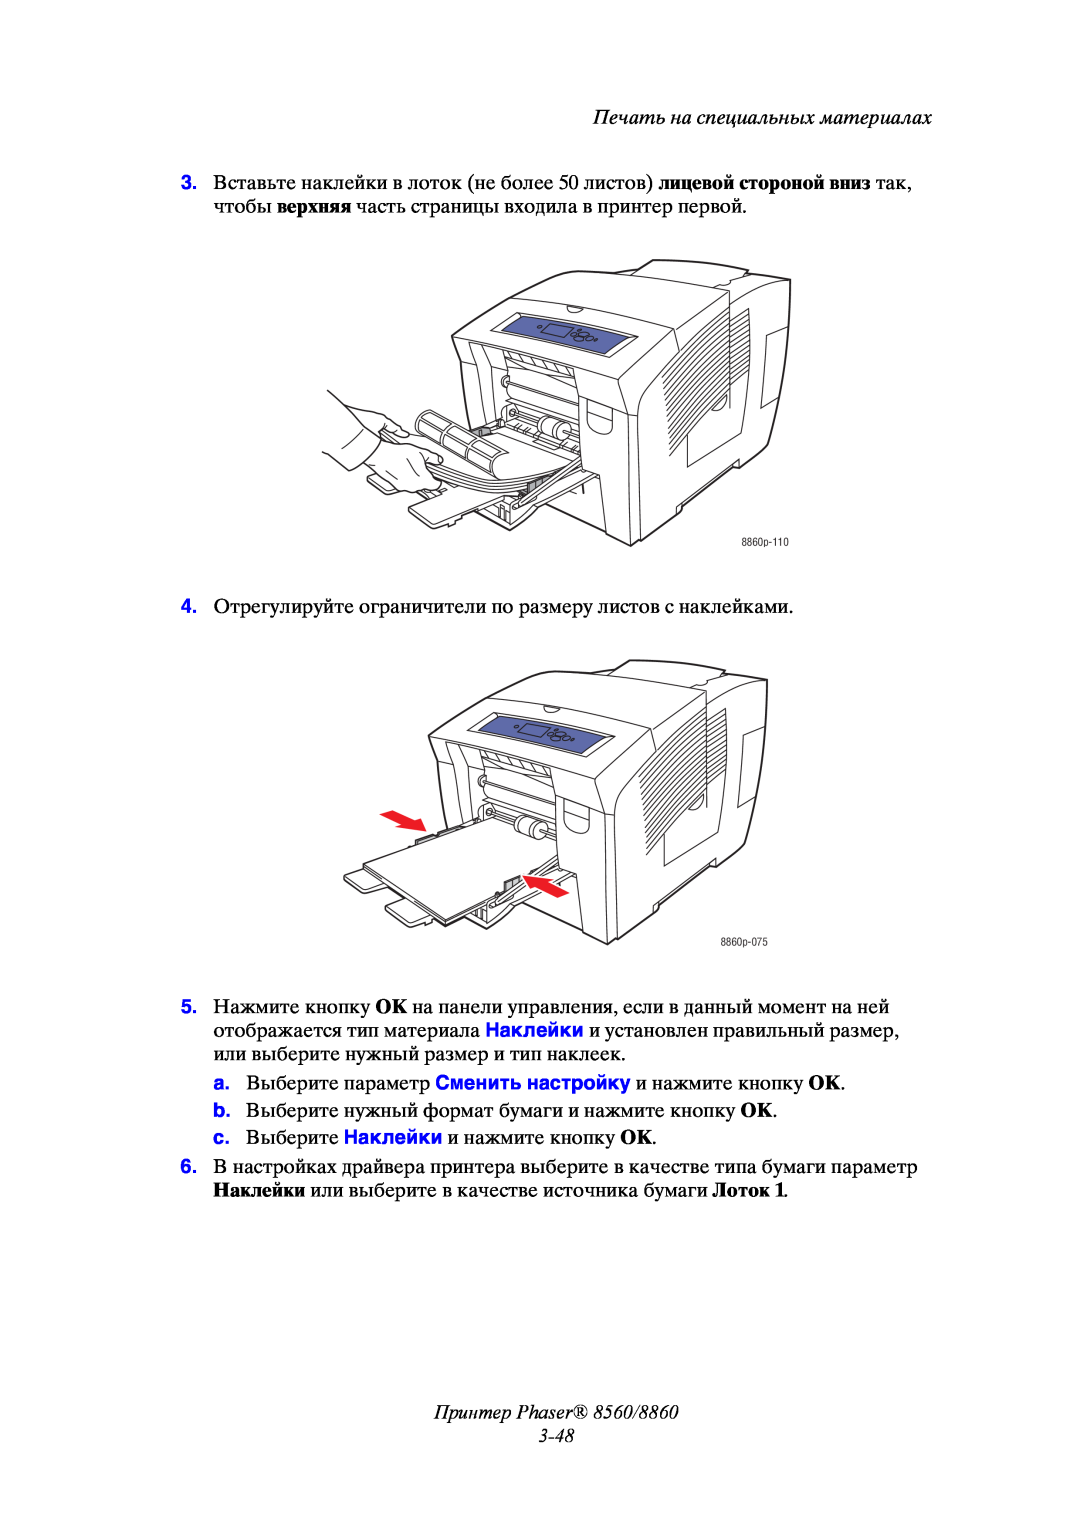 Xerox manual Принтер Phaser 8560/8860 3-48, Печать на специальных материалах, 8860p-110, 8860p-075 